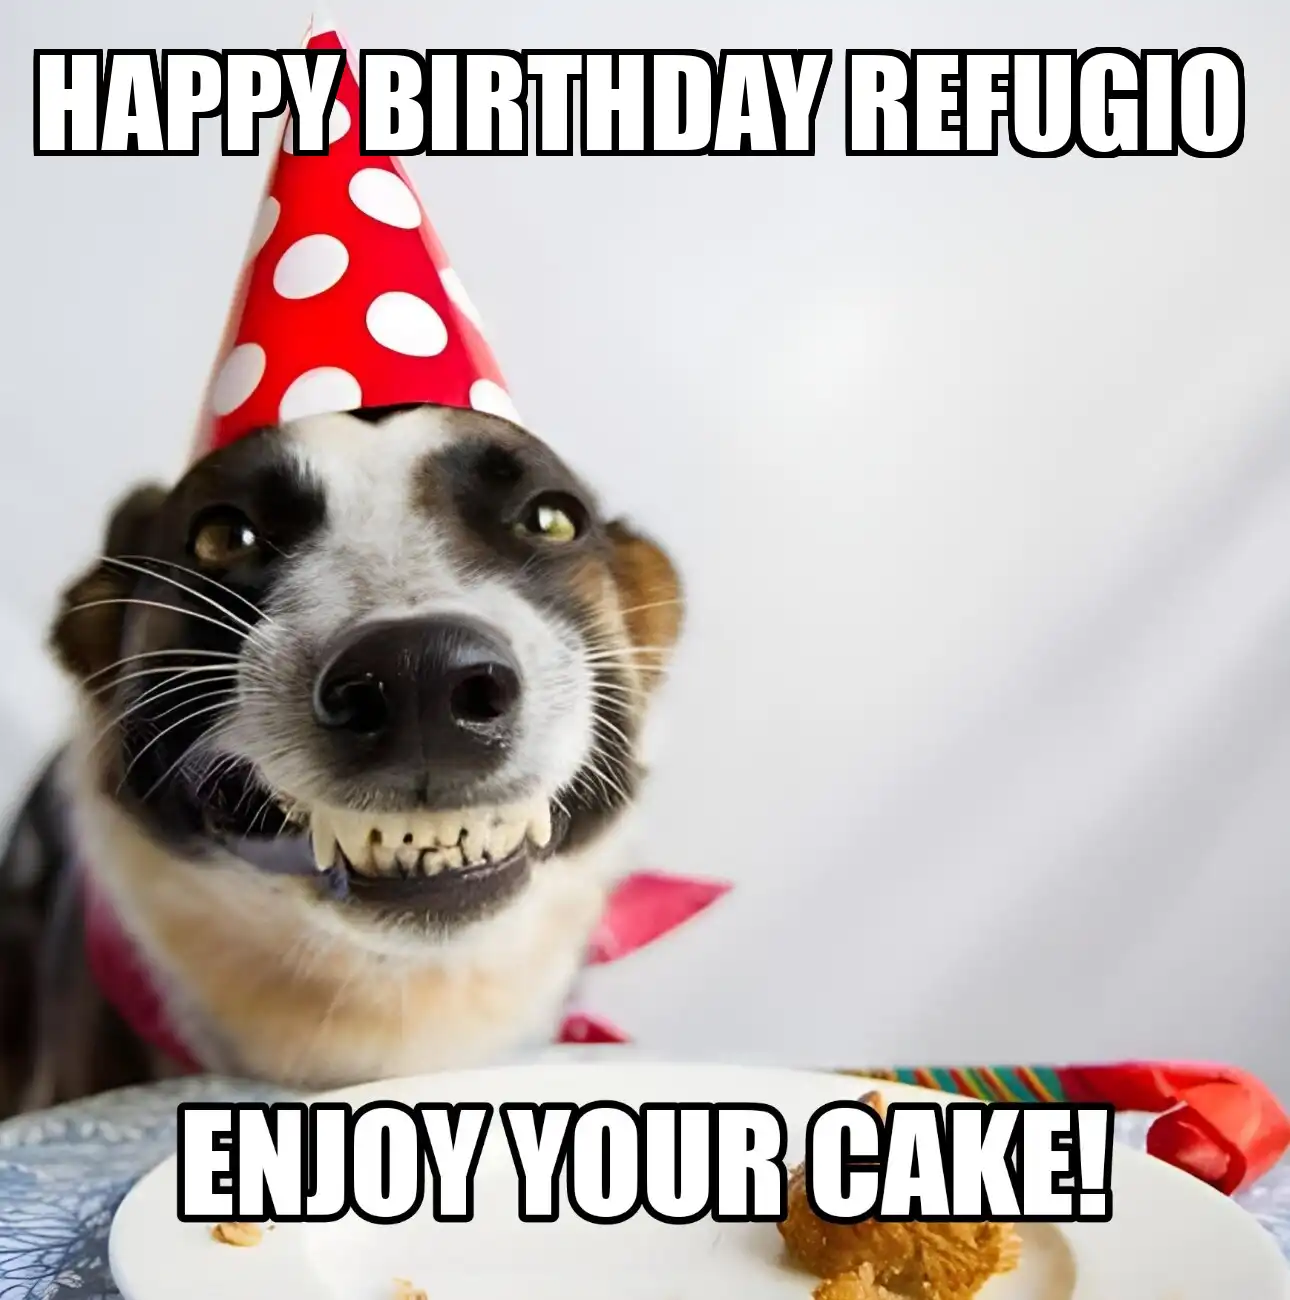 Happy Birthday Refugio Enjoy Your Cake Dog Meme